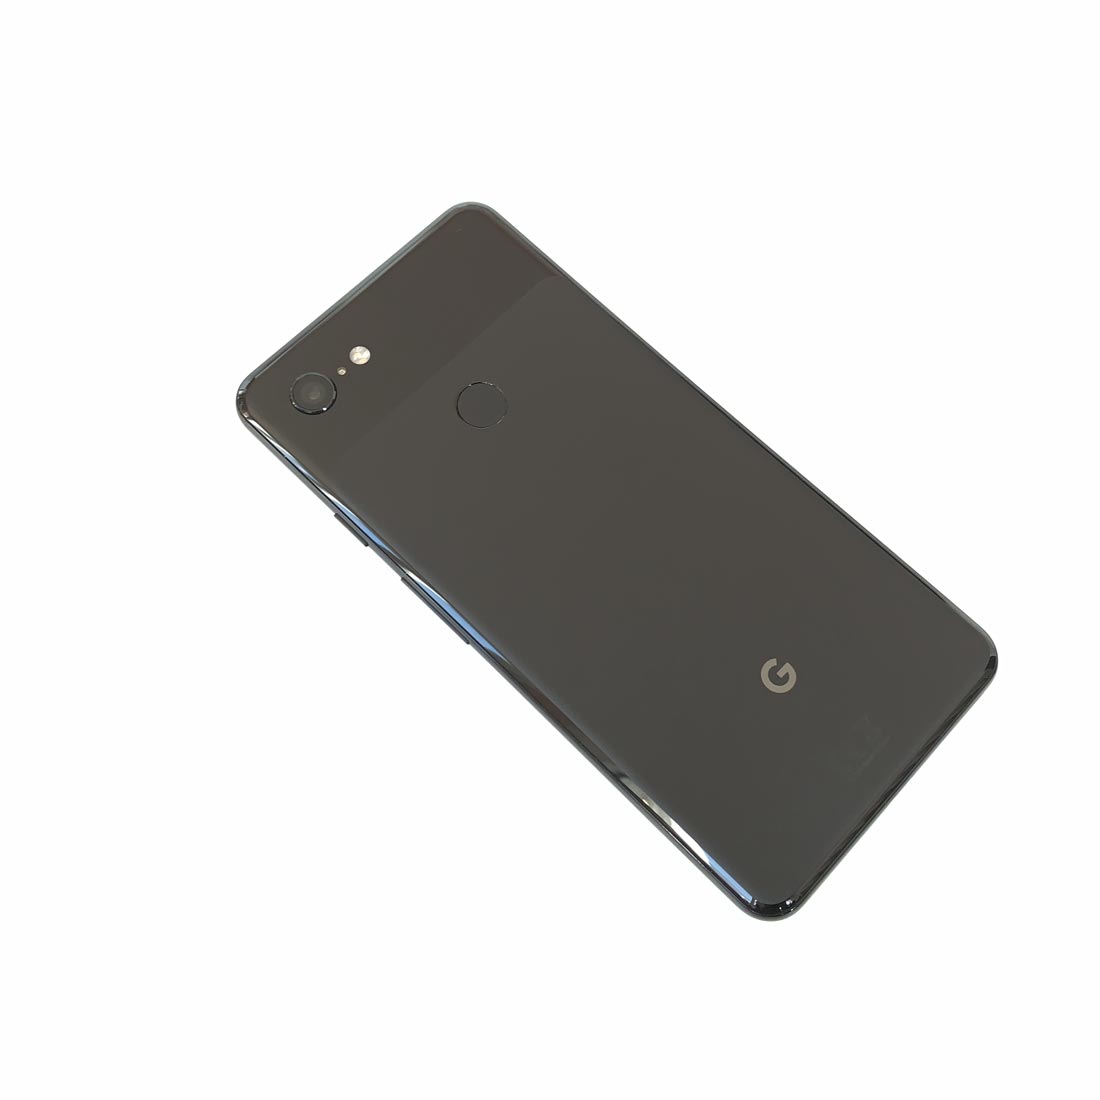 Smartphone Google Pixel 3 XL, 2018, Ph. Moctar KANE.